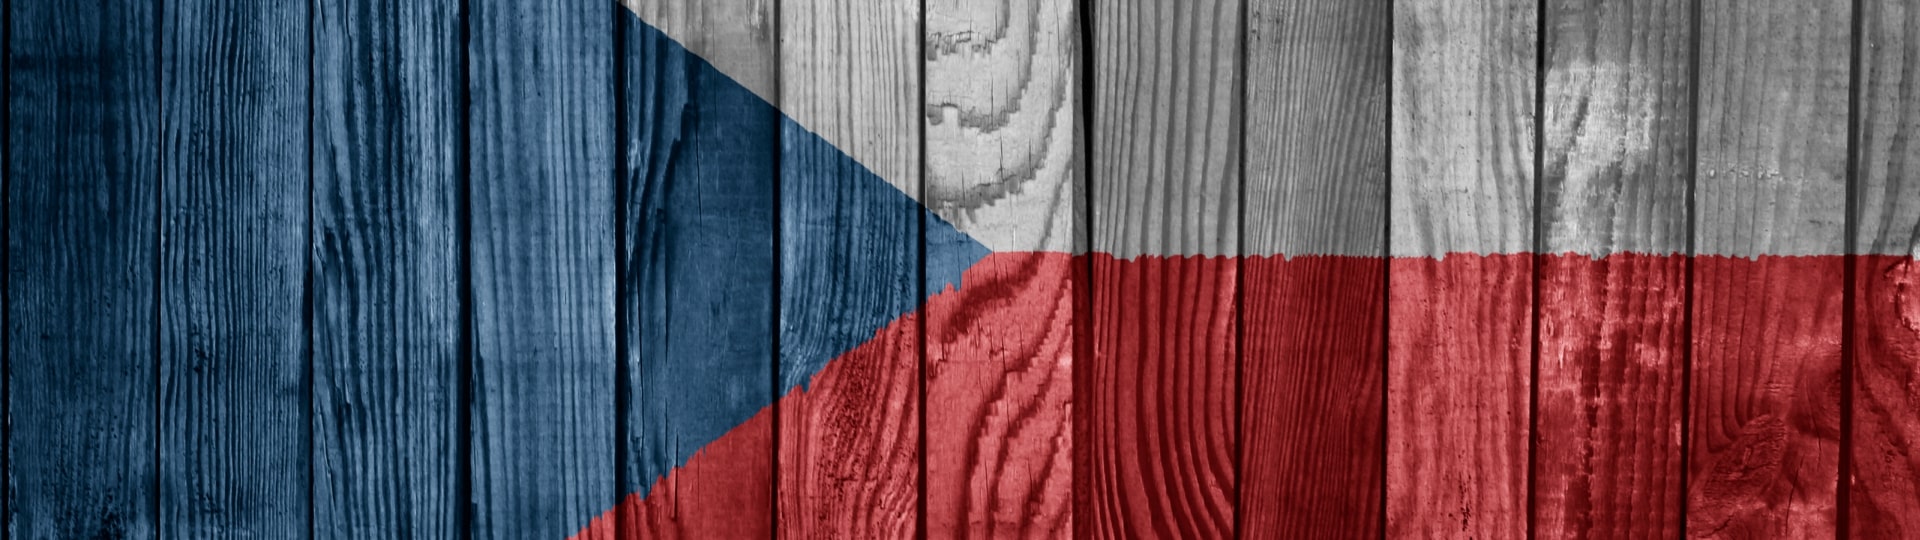 V roce 2018 se české ekonomice bude dařit